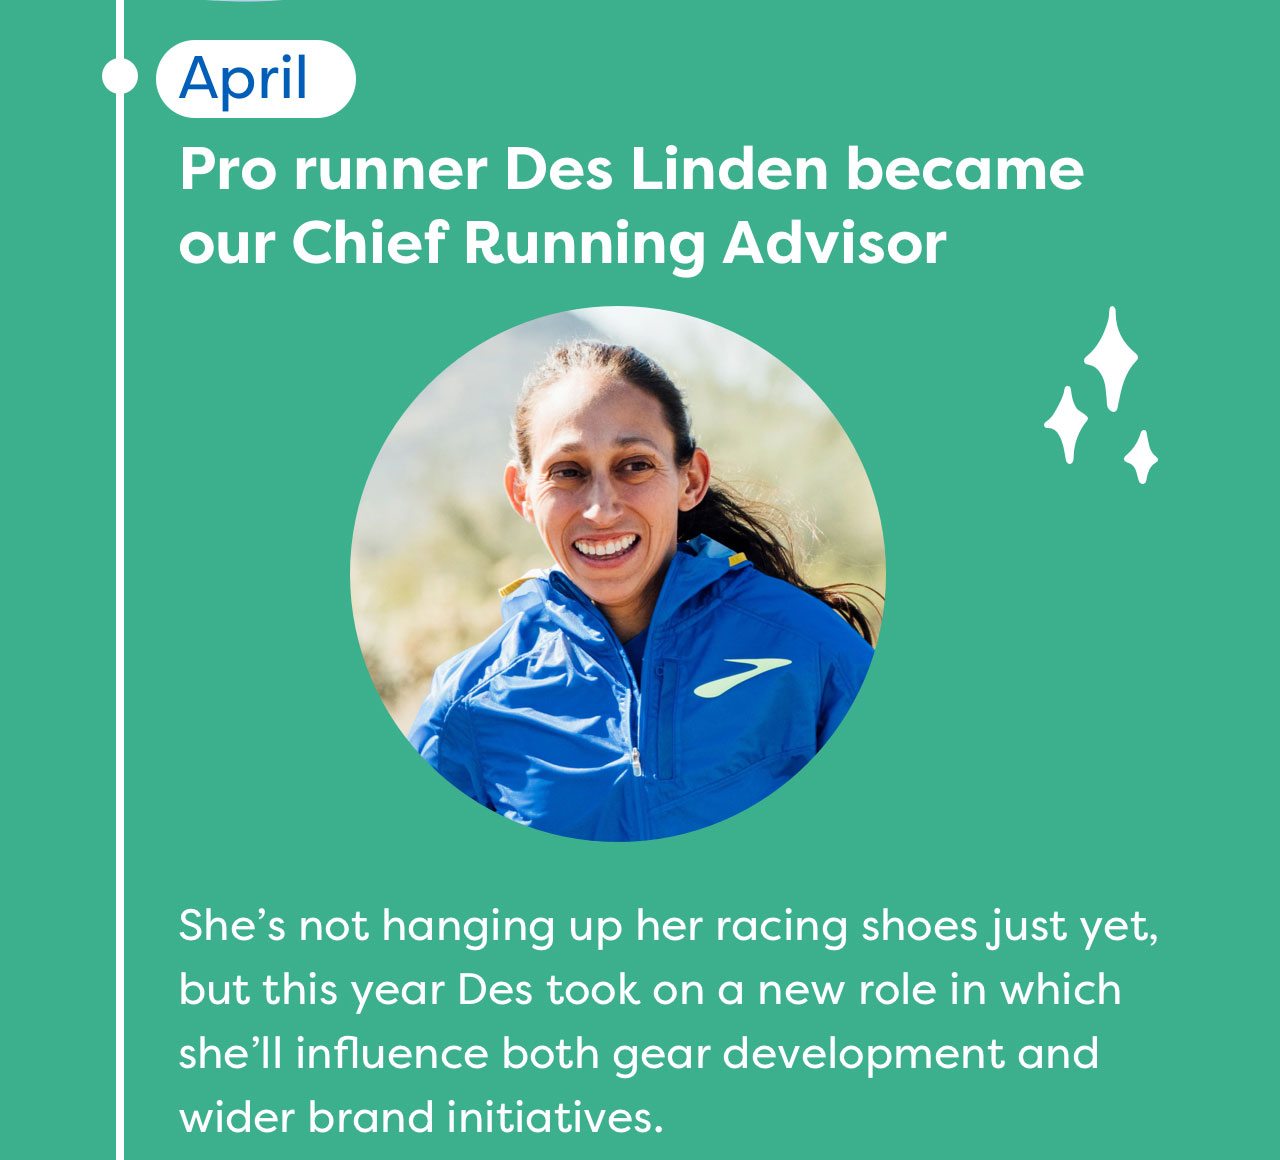 Pro runner Des Linden became our Chied Running Advisor